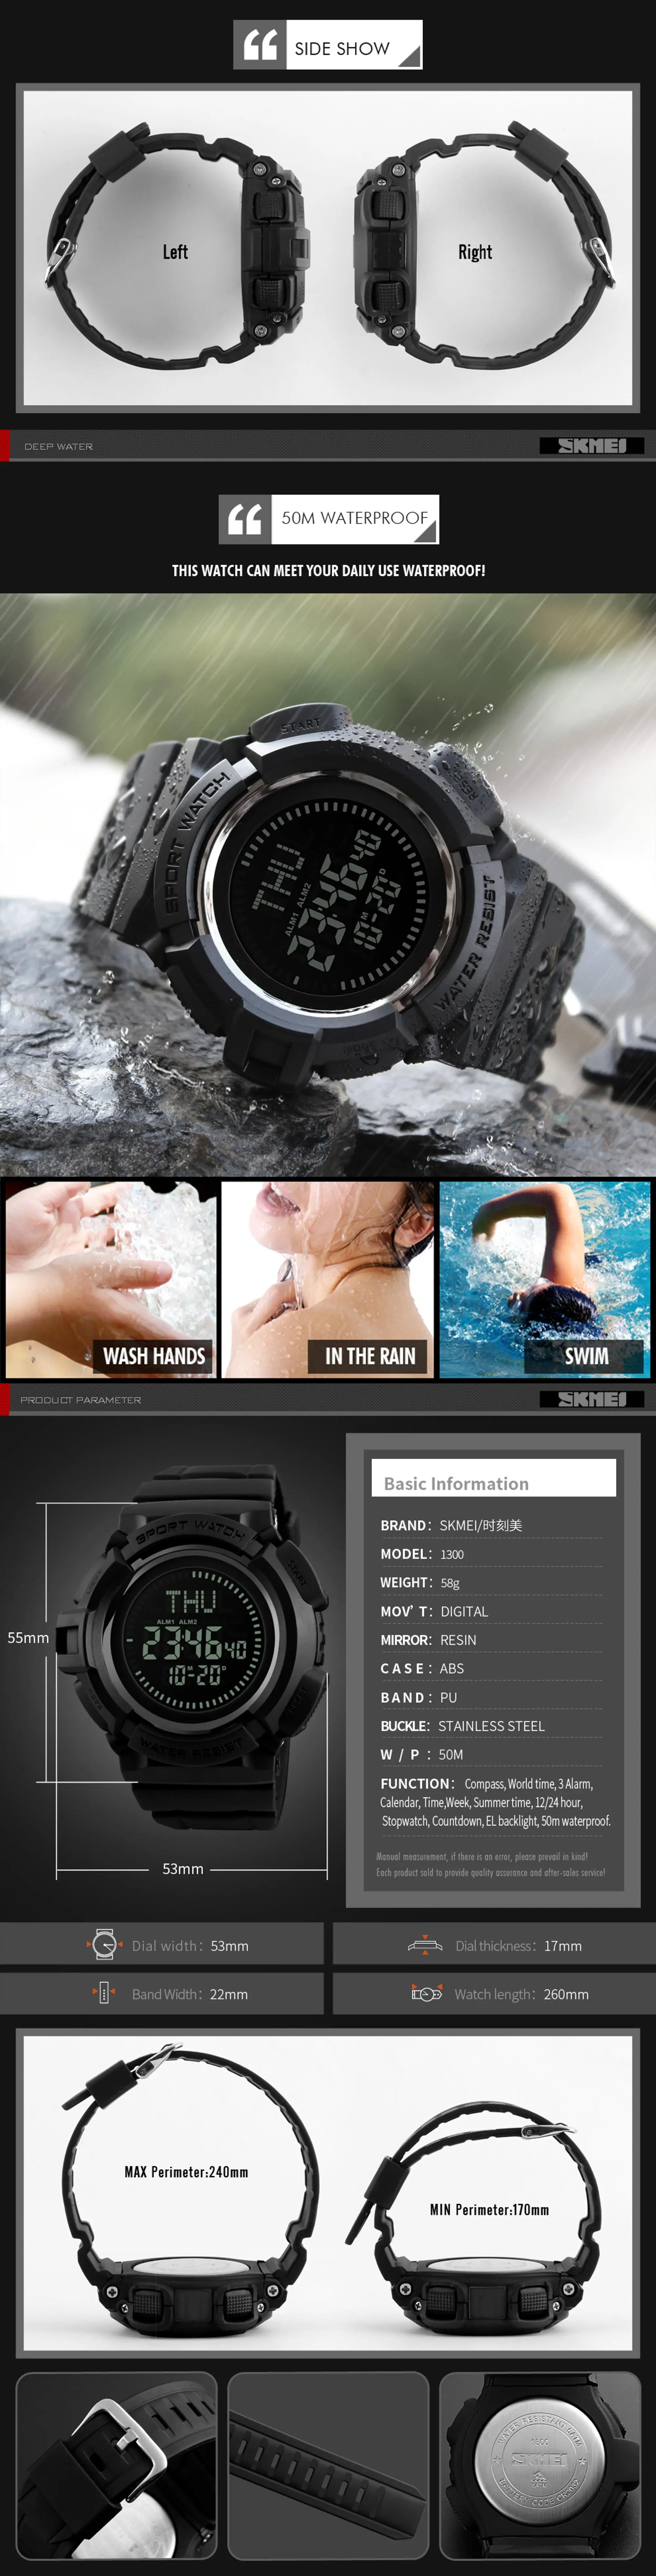 1300 watch details 3.jpg